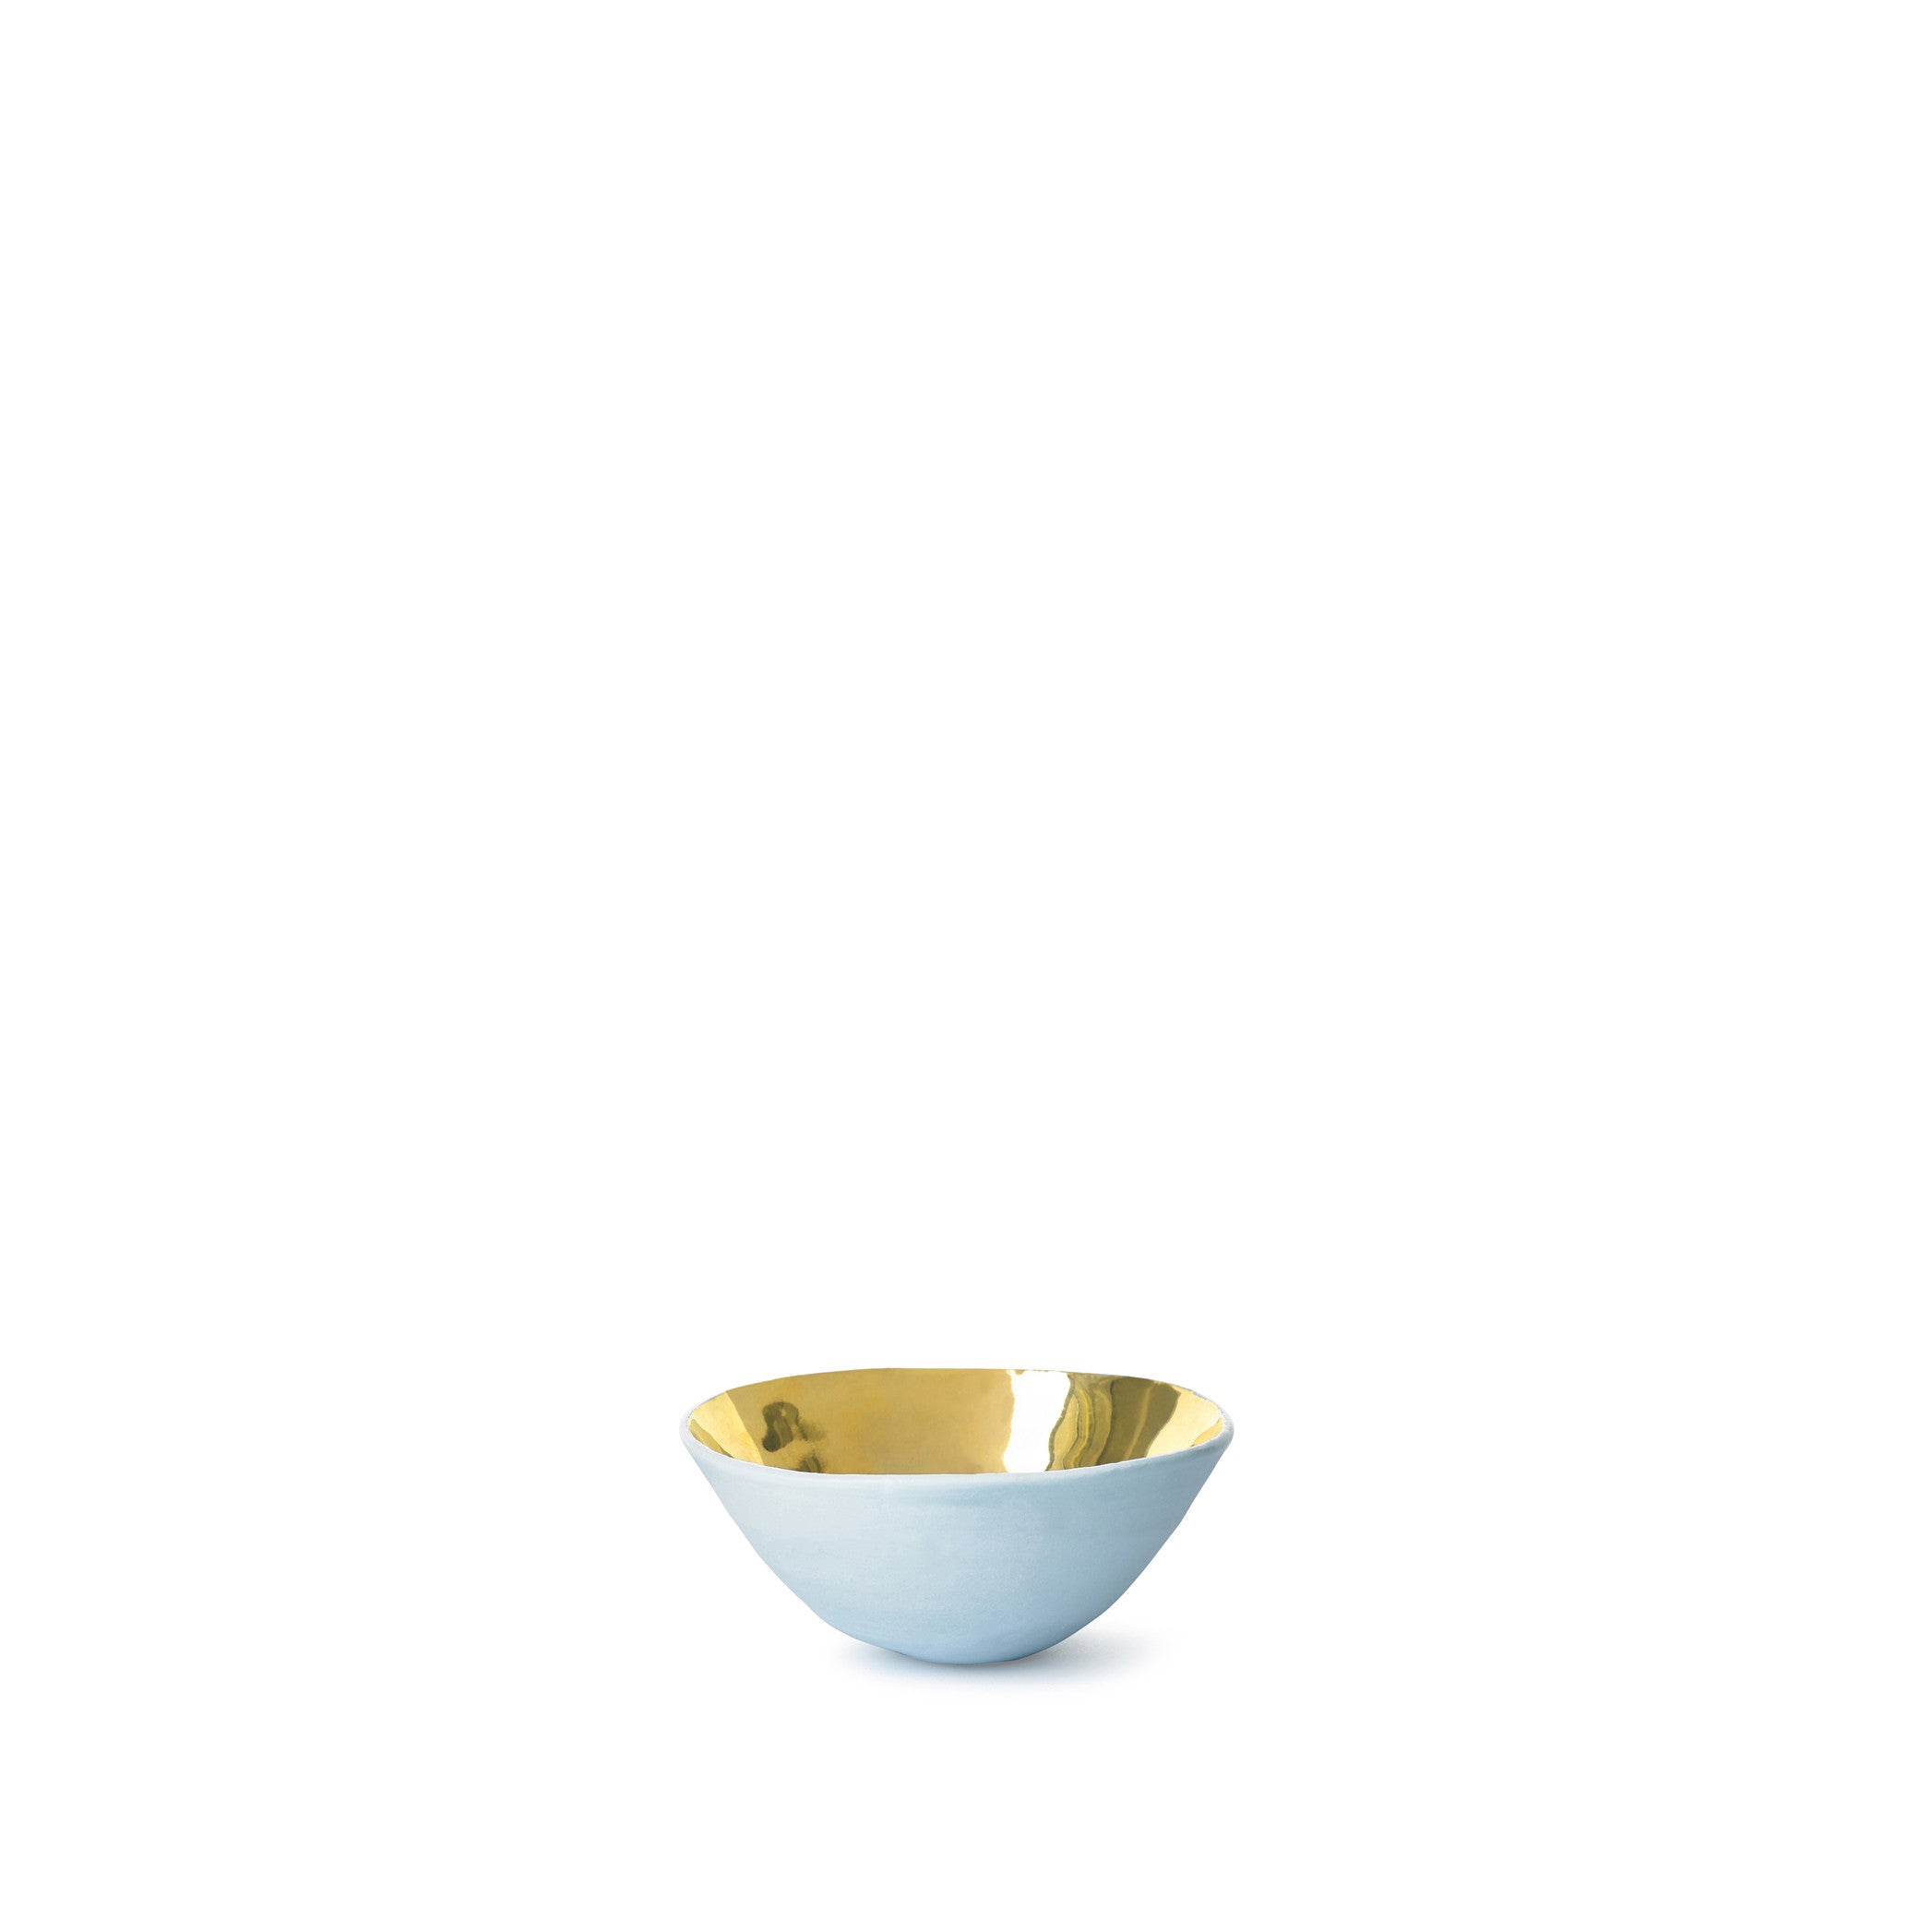 Small Light Blue Ceramic Bowl with Gold Glaze, 6cm